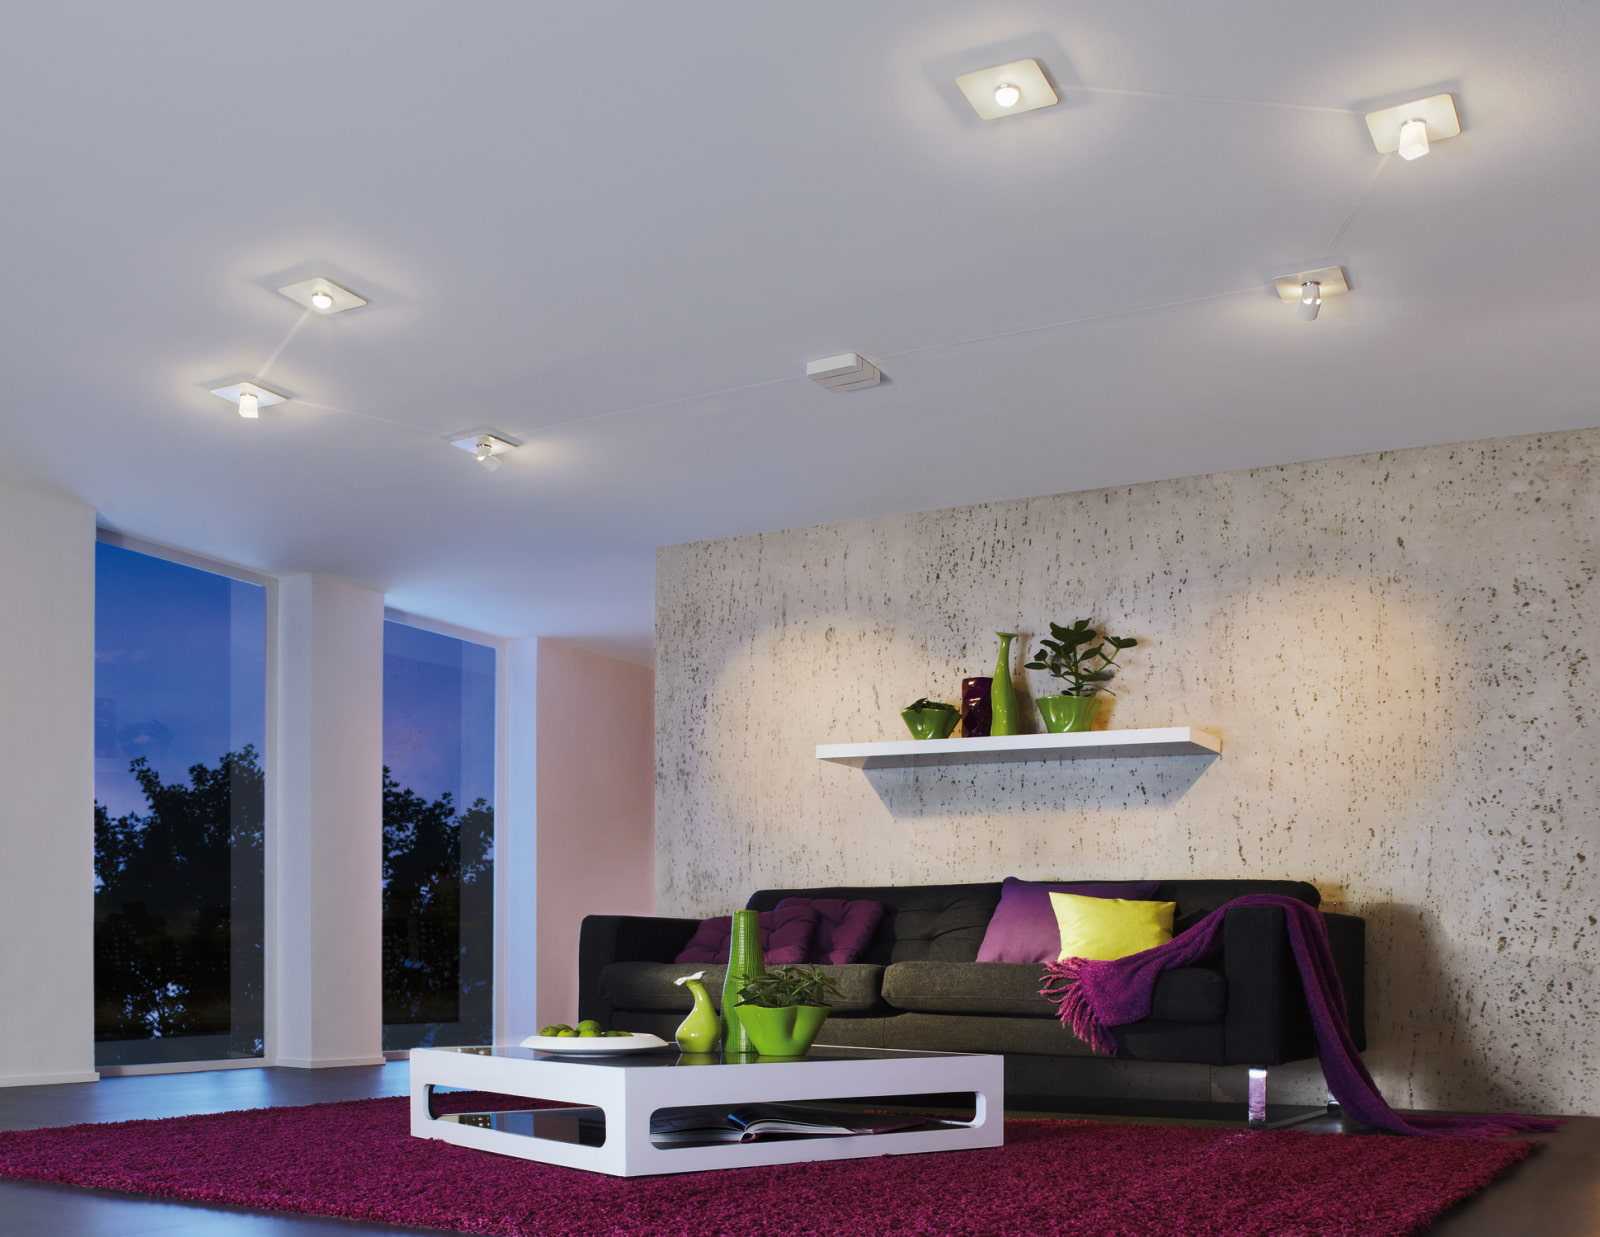 Парящий потолок (66 фото): что это такое, натяжные потолки нового поколения с подсветкой по периметру, парящие линии в дизайне конструкций, отзывы